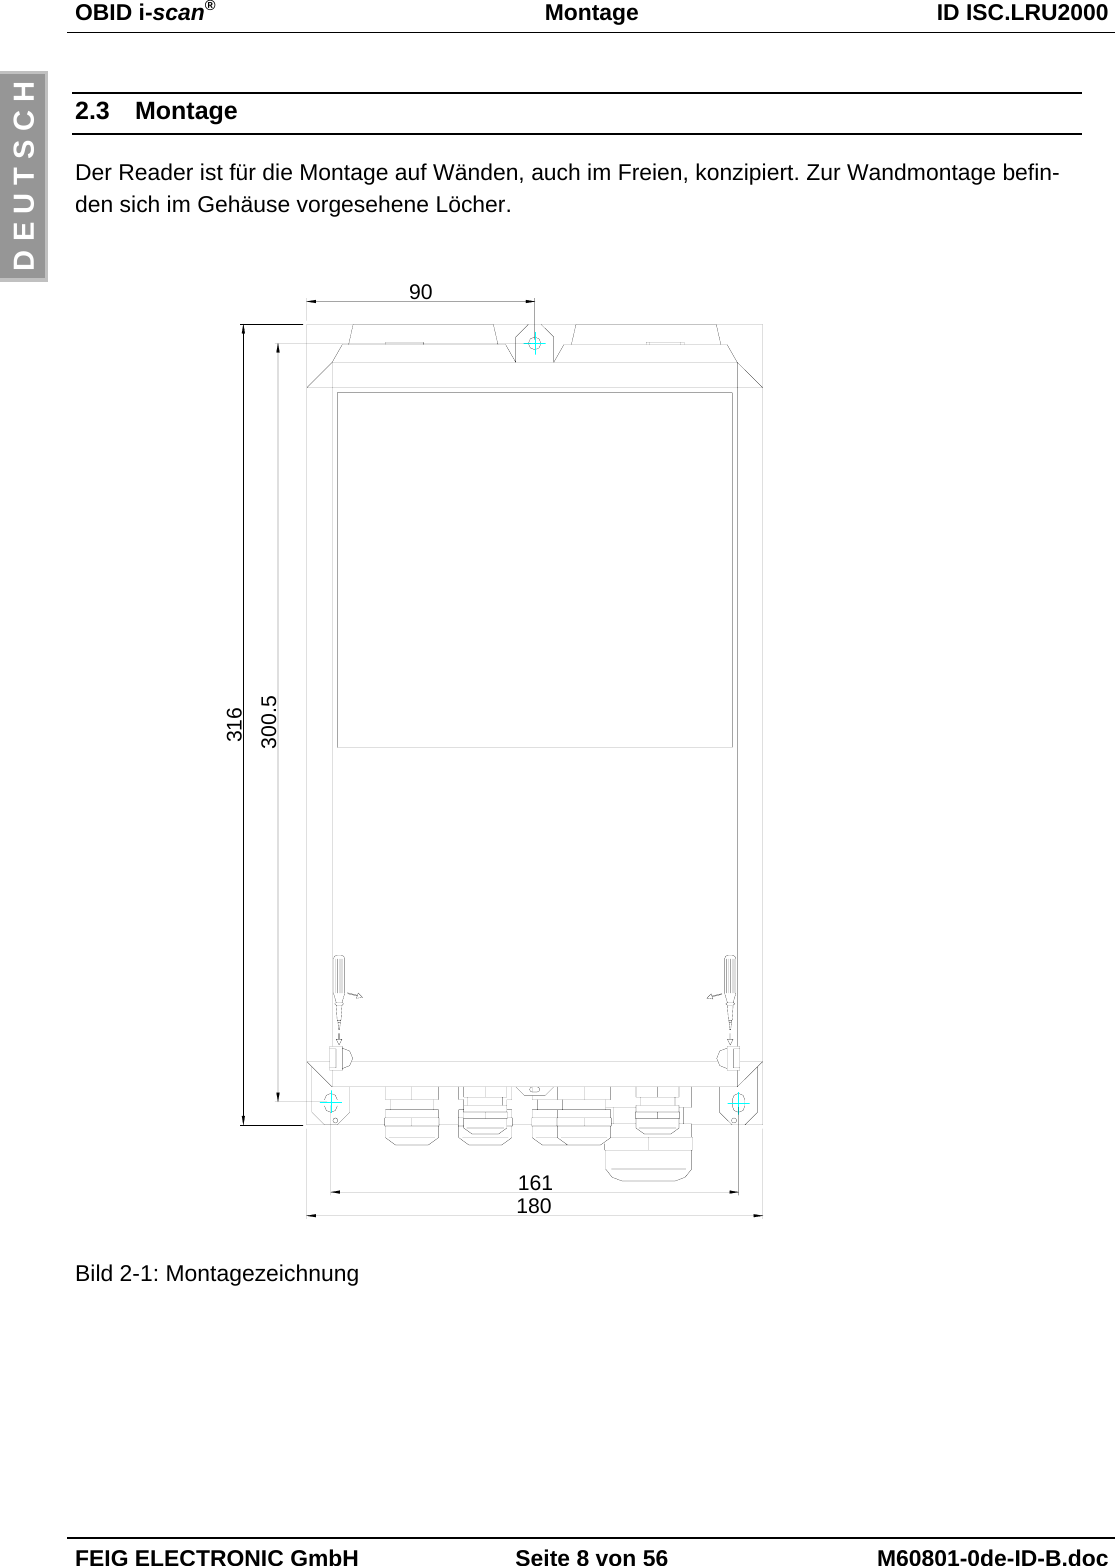 OBID i-scan®Montage ID ISC.LRU2000FEIG ELECTRONIC GmbH Seite 8 von 56 M60801-0de-ID-B.docD E U T S C H2.3 MontageDer Reader ist für die Montage auf Wänden, auch im Freien, konzipiert. Zur Wandmontage befin-den sich im Gehäuse vorgesehene Löcher.Bild 2-1: Montagezeichnung316300.516118090